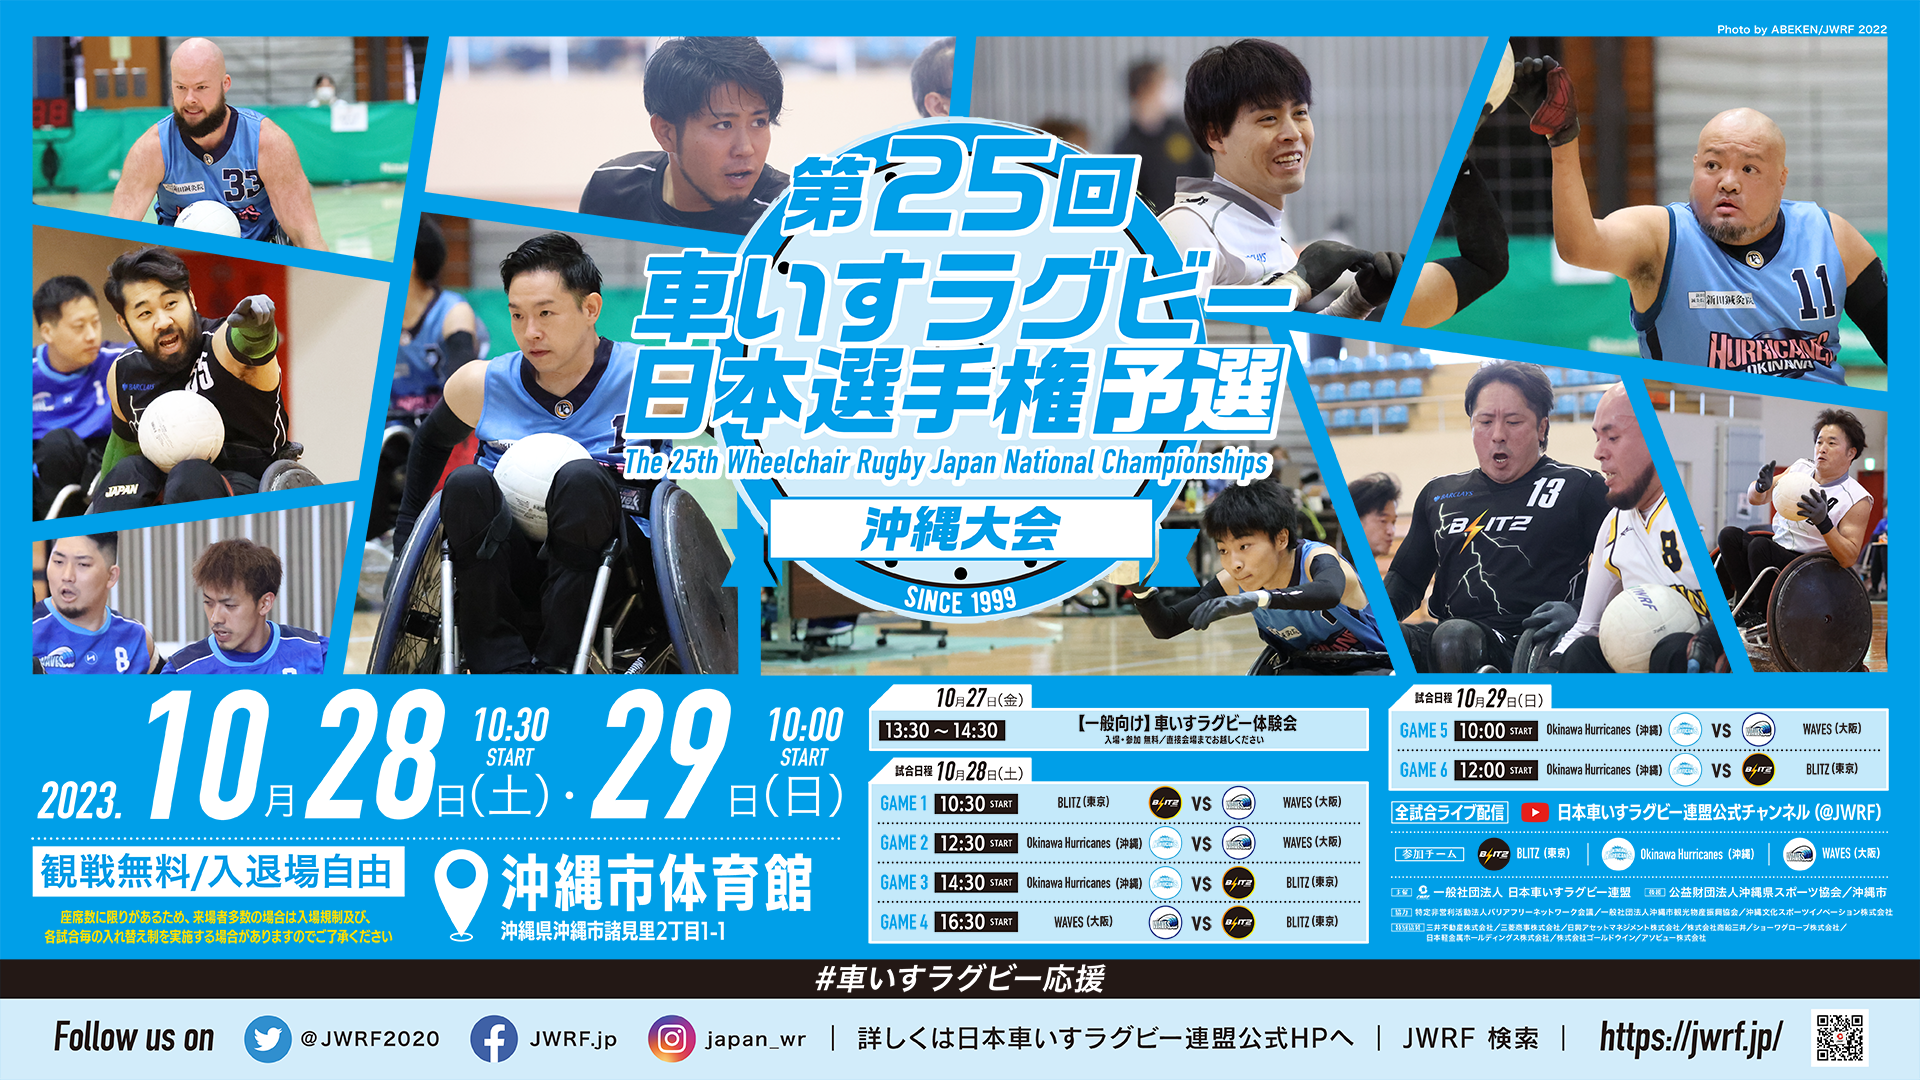 「第25回 車いすラグビー日本選手権予選 沖縄大会」開催のお知らせ